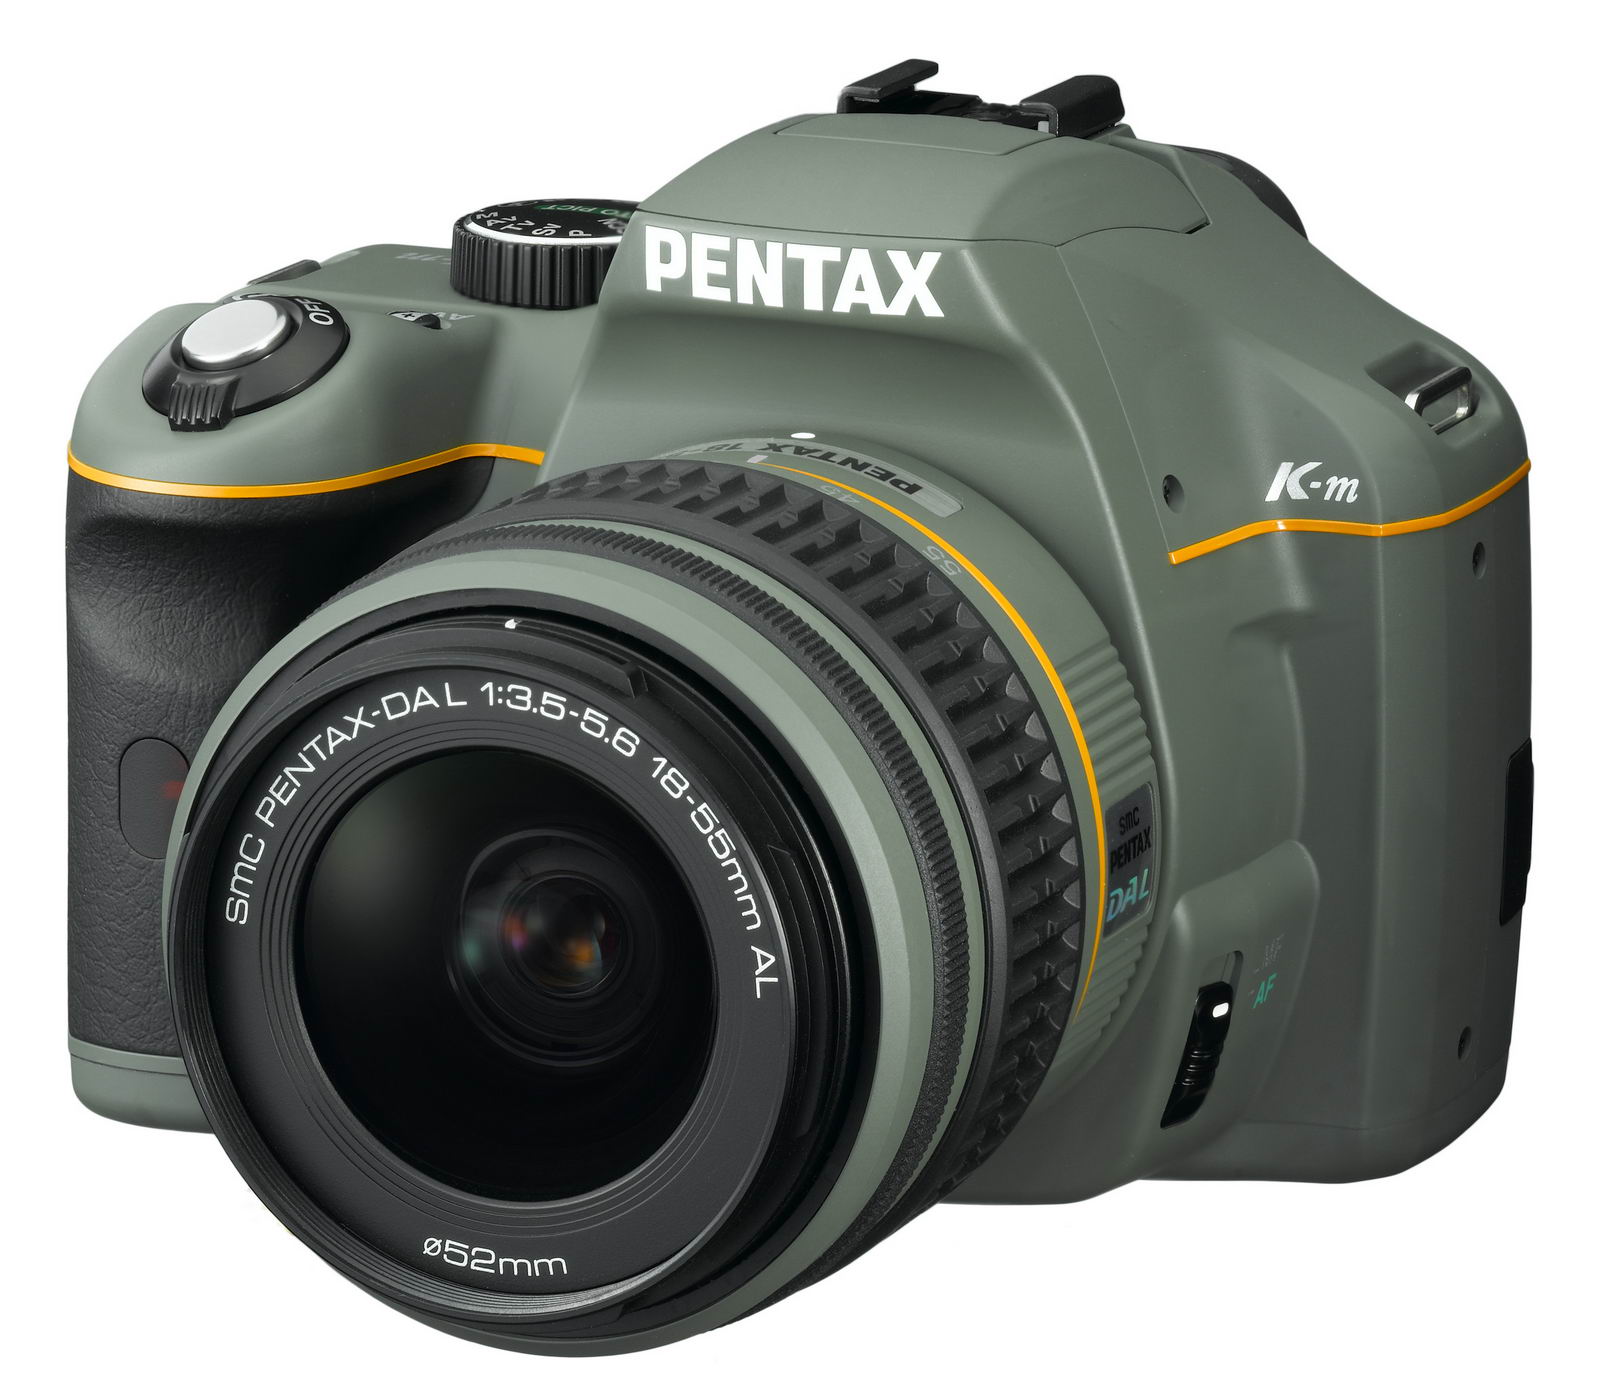 使いやすいエントリークラスのデジタル一眼レフカメラ「PENTAX K-m